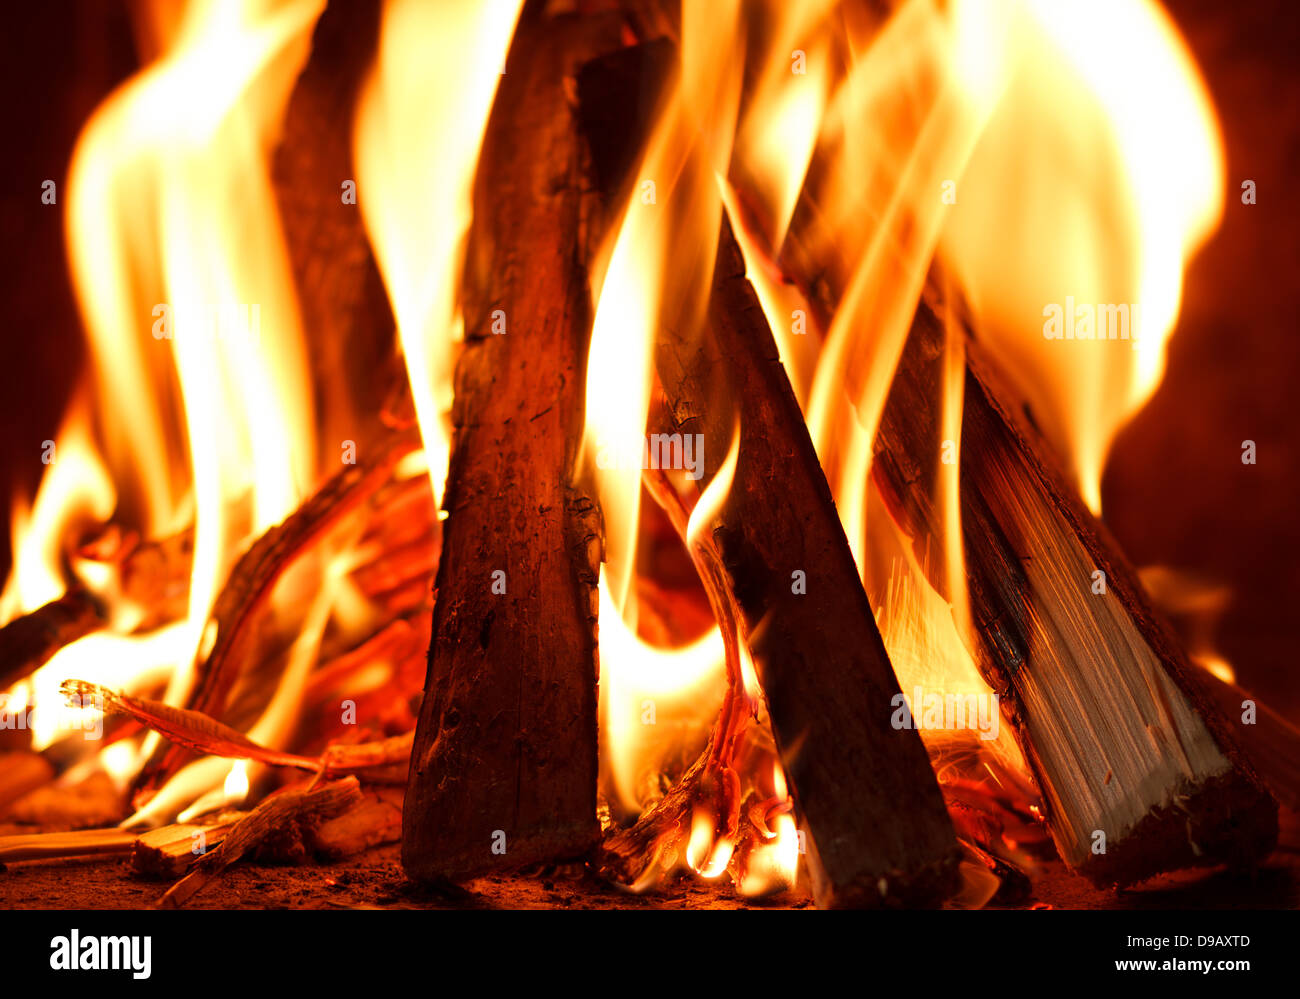 Nahaufnahme von Brennholz im Feuer brennen Stockfoto